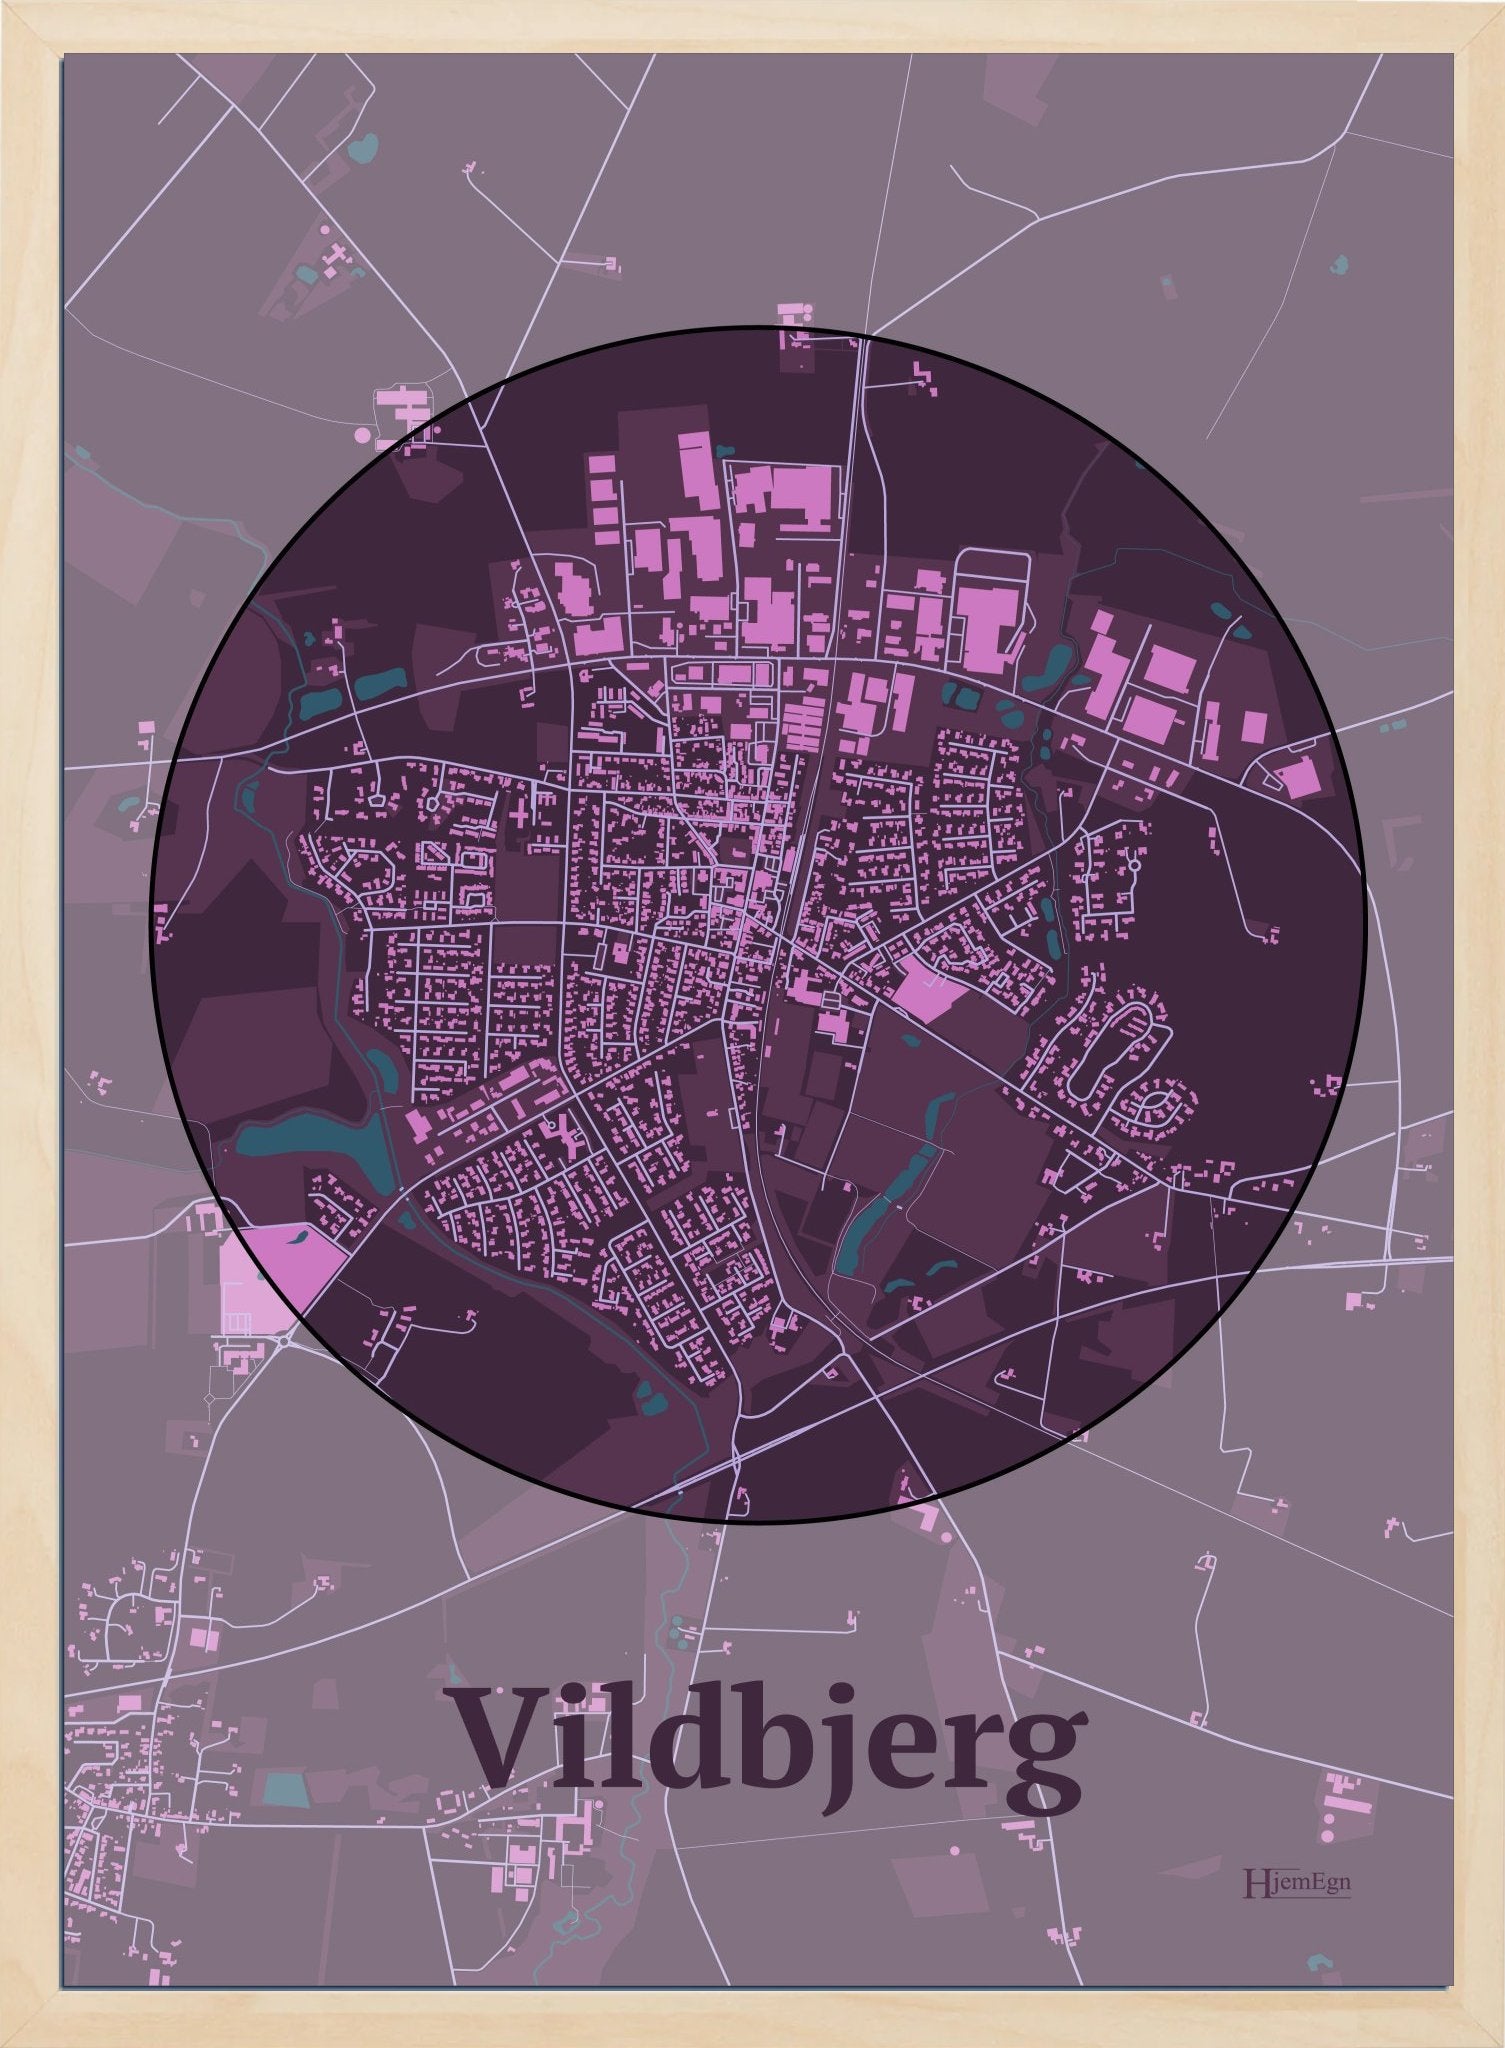 Vildbjerg plakat i farve mørk rød og HjemEgn.dk design centrum. Design bykort for Vildbjerg